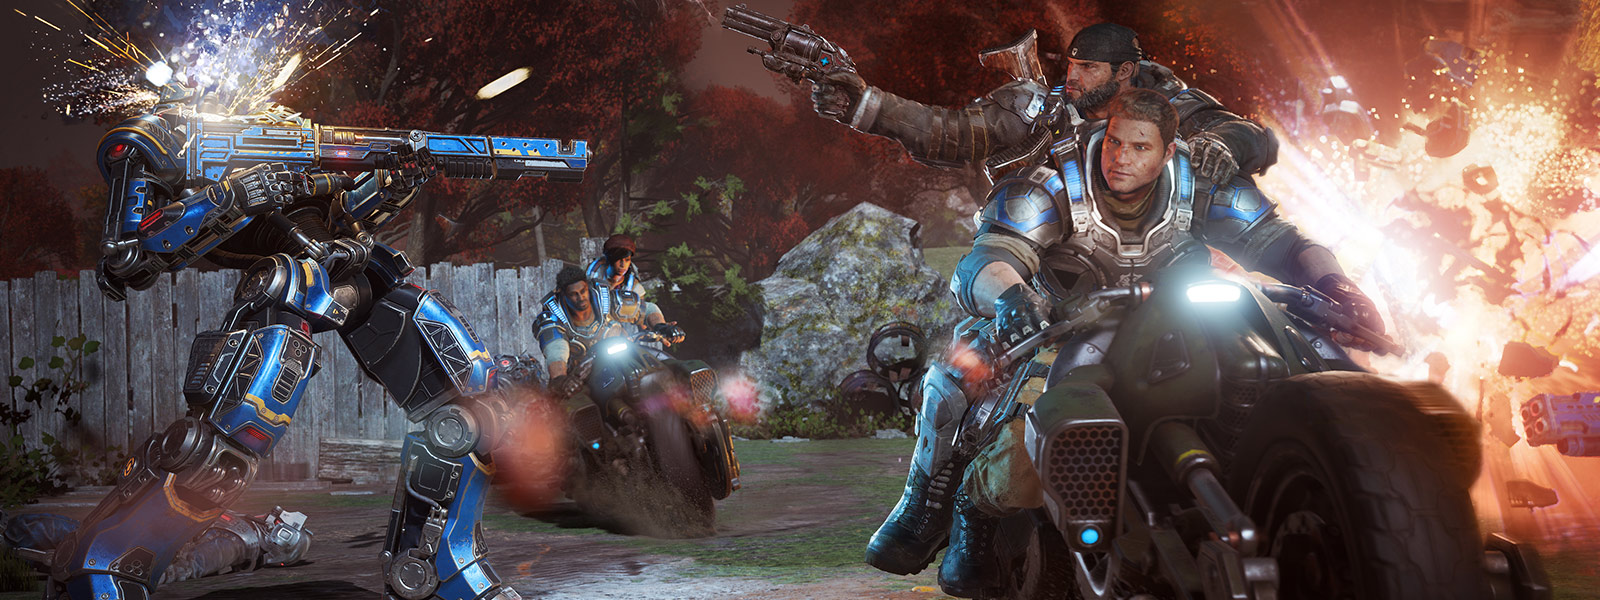 遊戲 Gears of War 4 中的 JD Fenix 和他的朋友在戰鬥時發射武器並騎著摩托車